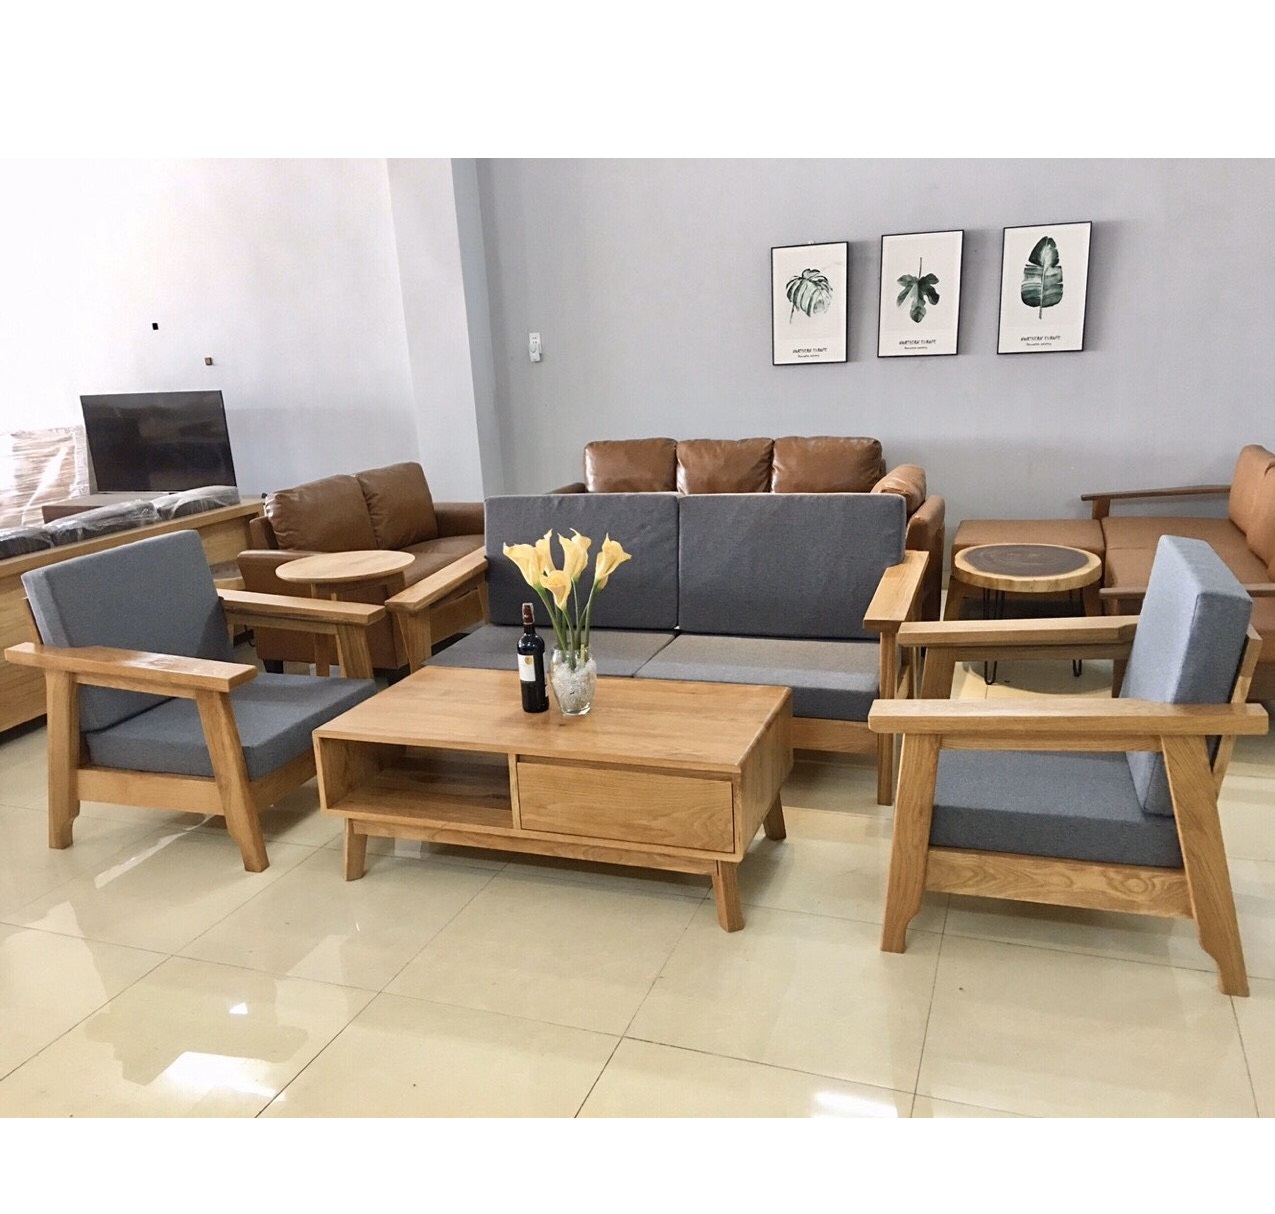 Bộ bàn ghế phòng khách gỗ sồi Mỹ là sản phẩm cao cấp và đẳng cấp của nội thất phòng khách. Sản phẩm được làm từ gỗ sồi Mỹ chất lượng cao, đảm bảo tính bền vững và mẫu mã sang trọng, tạo nên không gian sống hiện đại và đầy phong cách. Hãy xem hình ảnh liên quan để cảm nhận sự tinh tế của bộ bàn ghế phòng khách này.